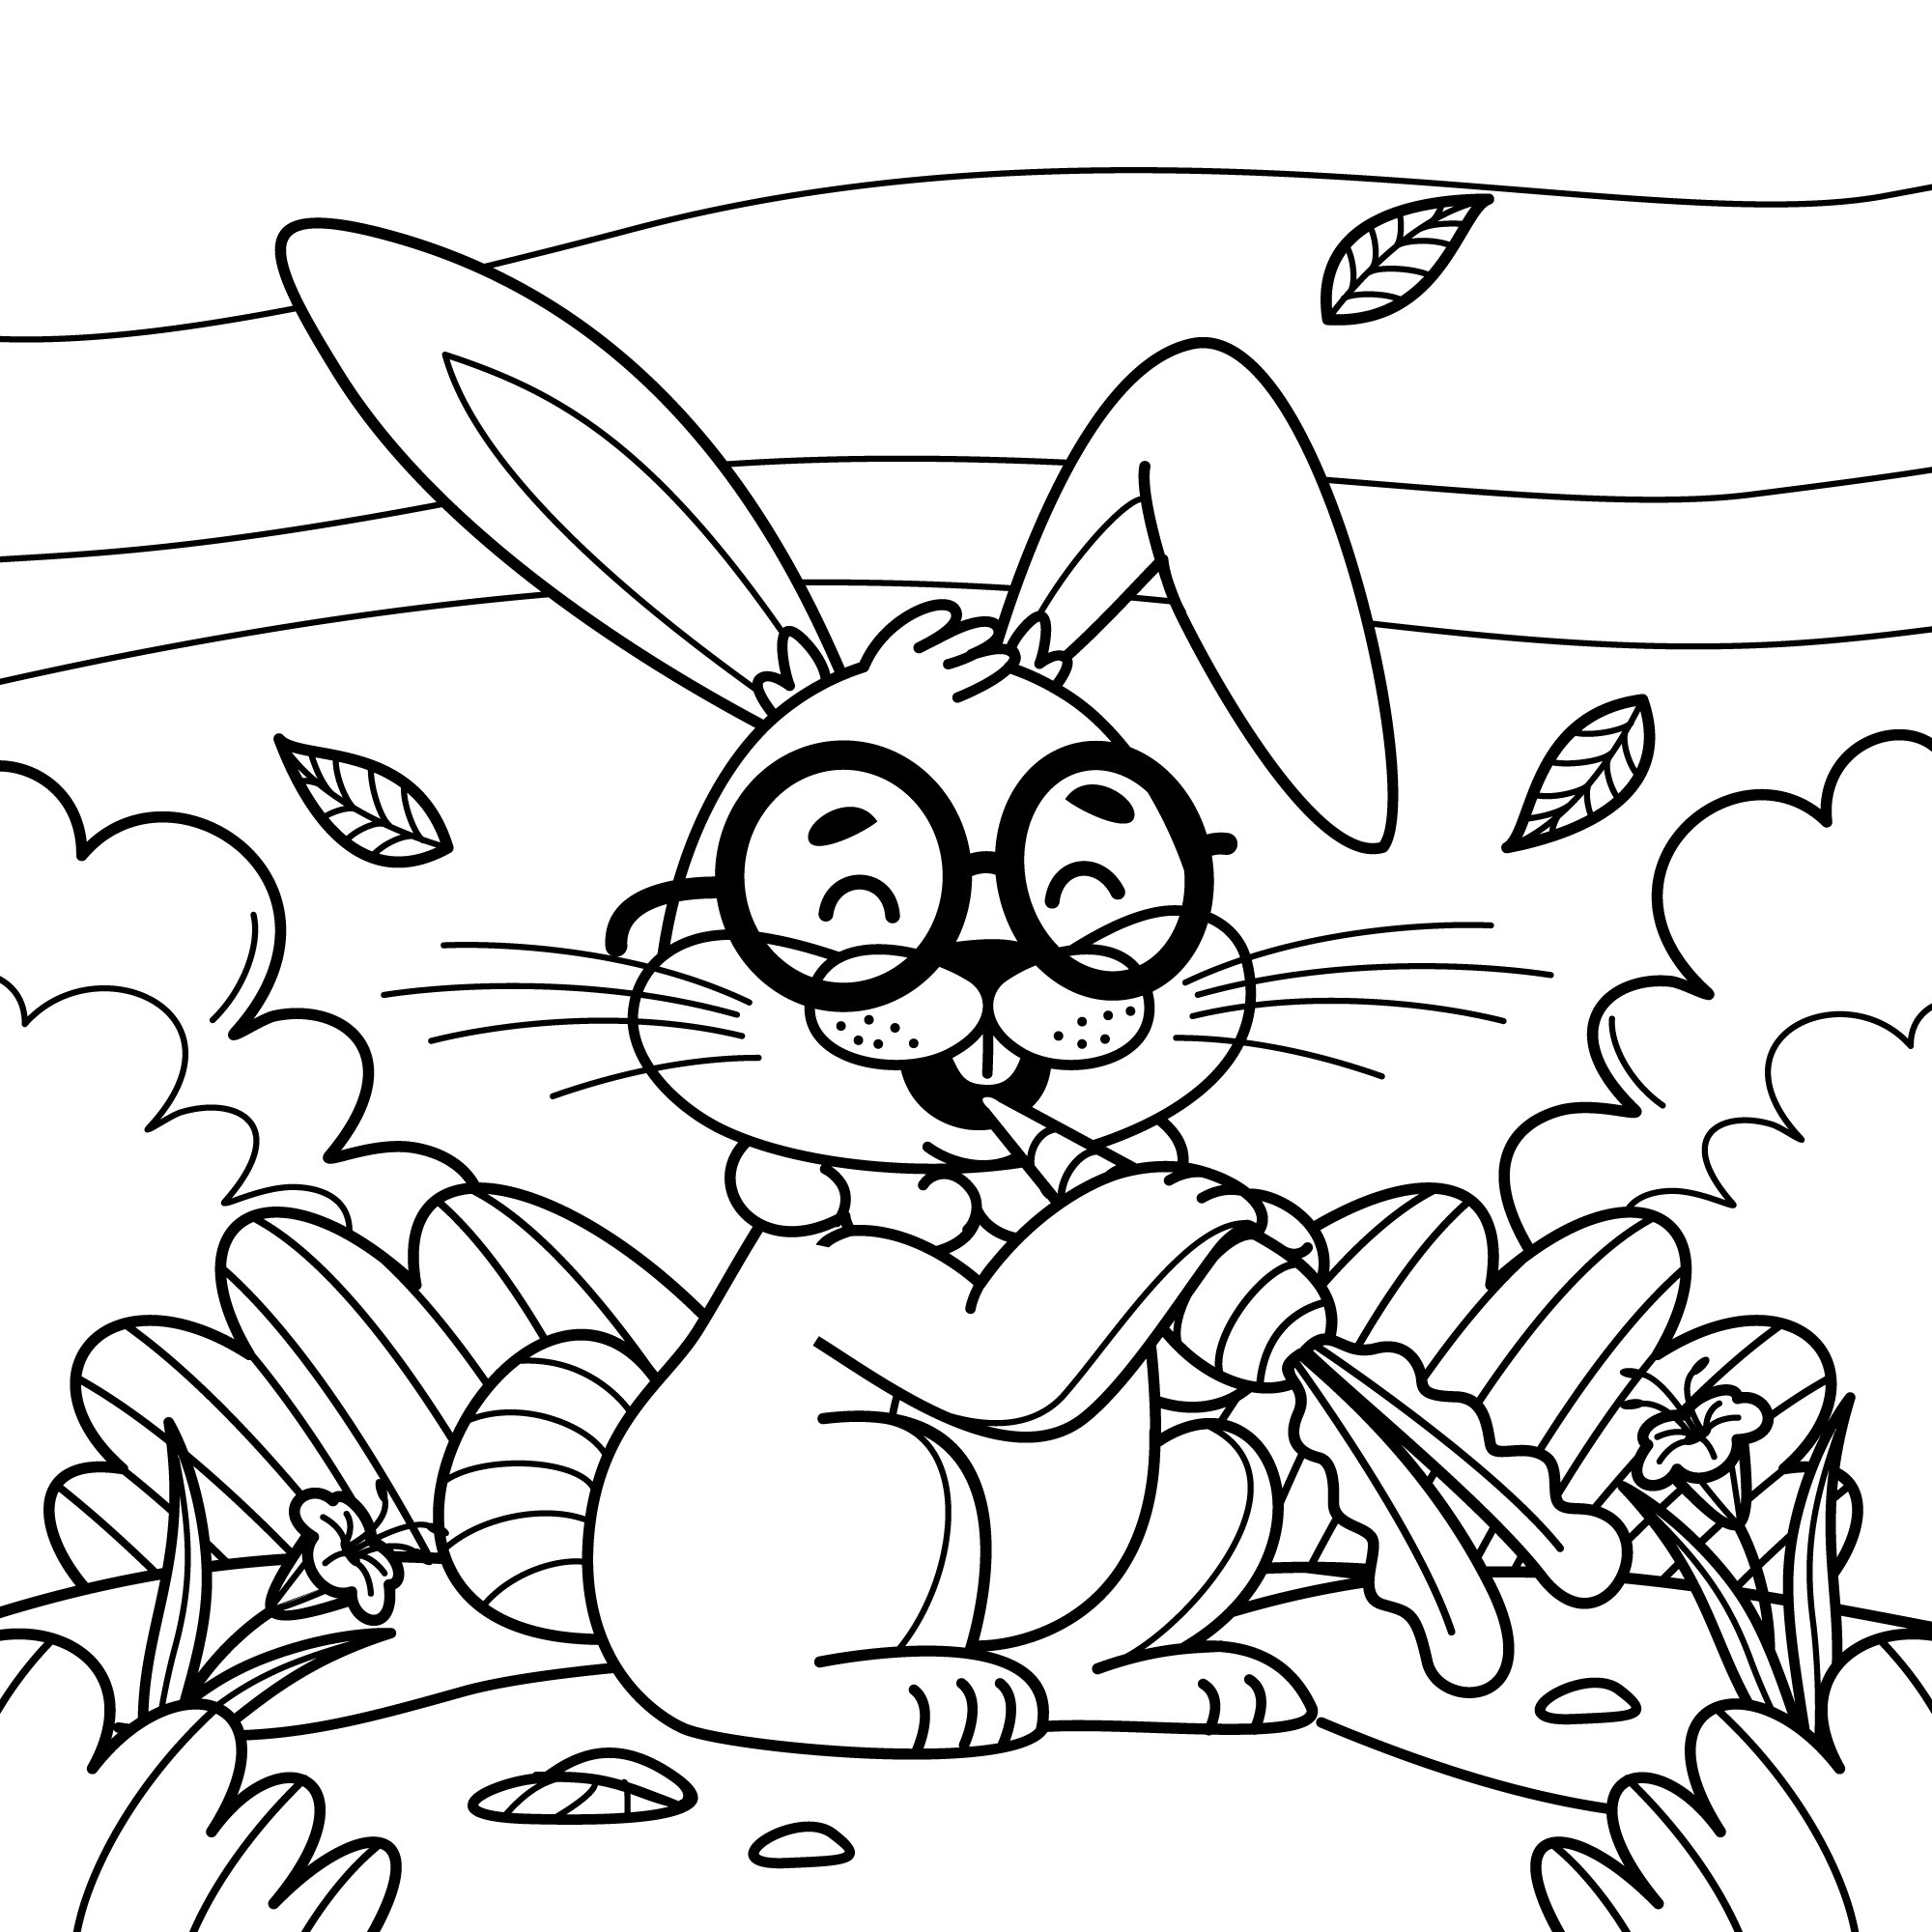 Раскраска для детей: заяц в очках грызет морковку